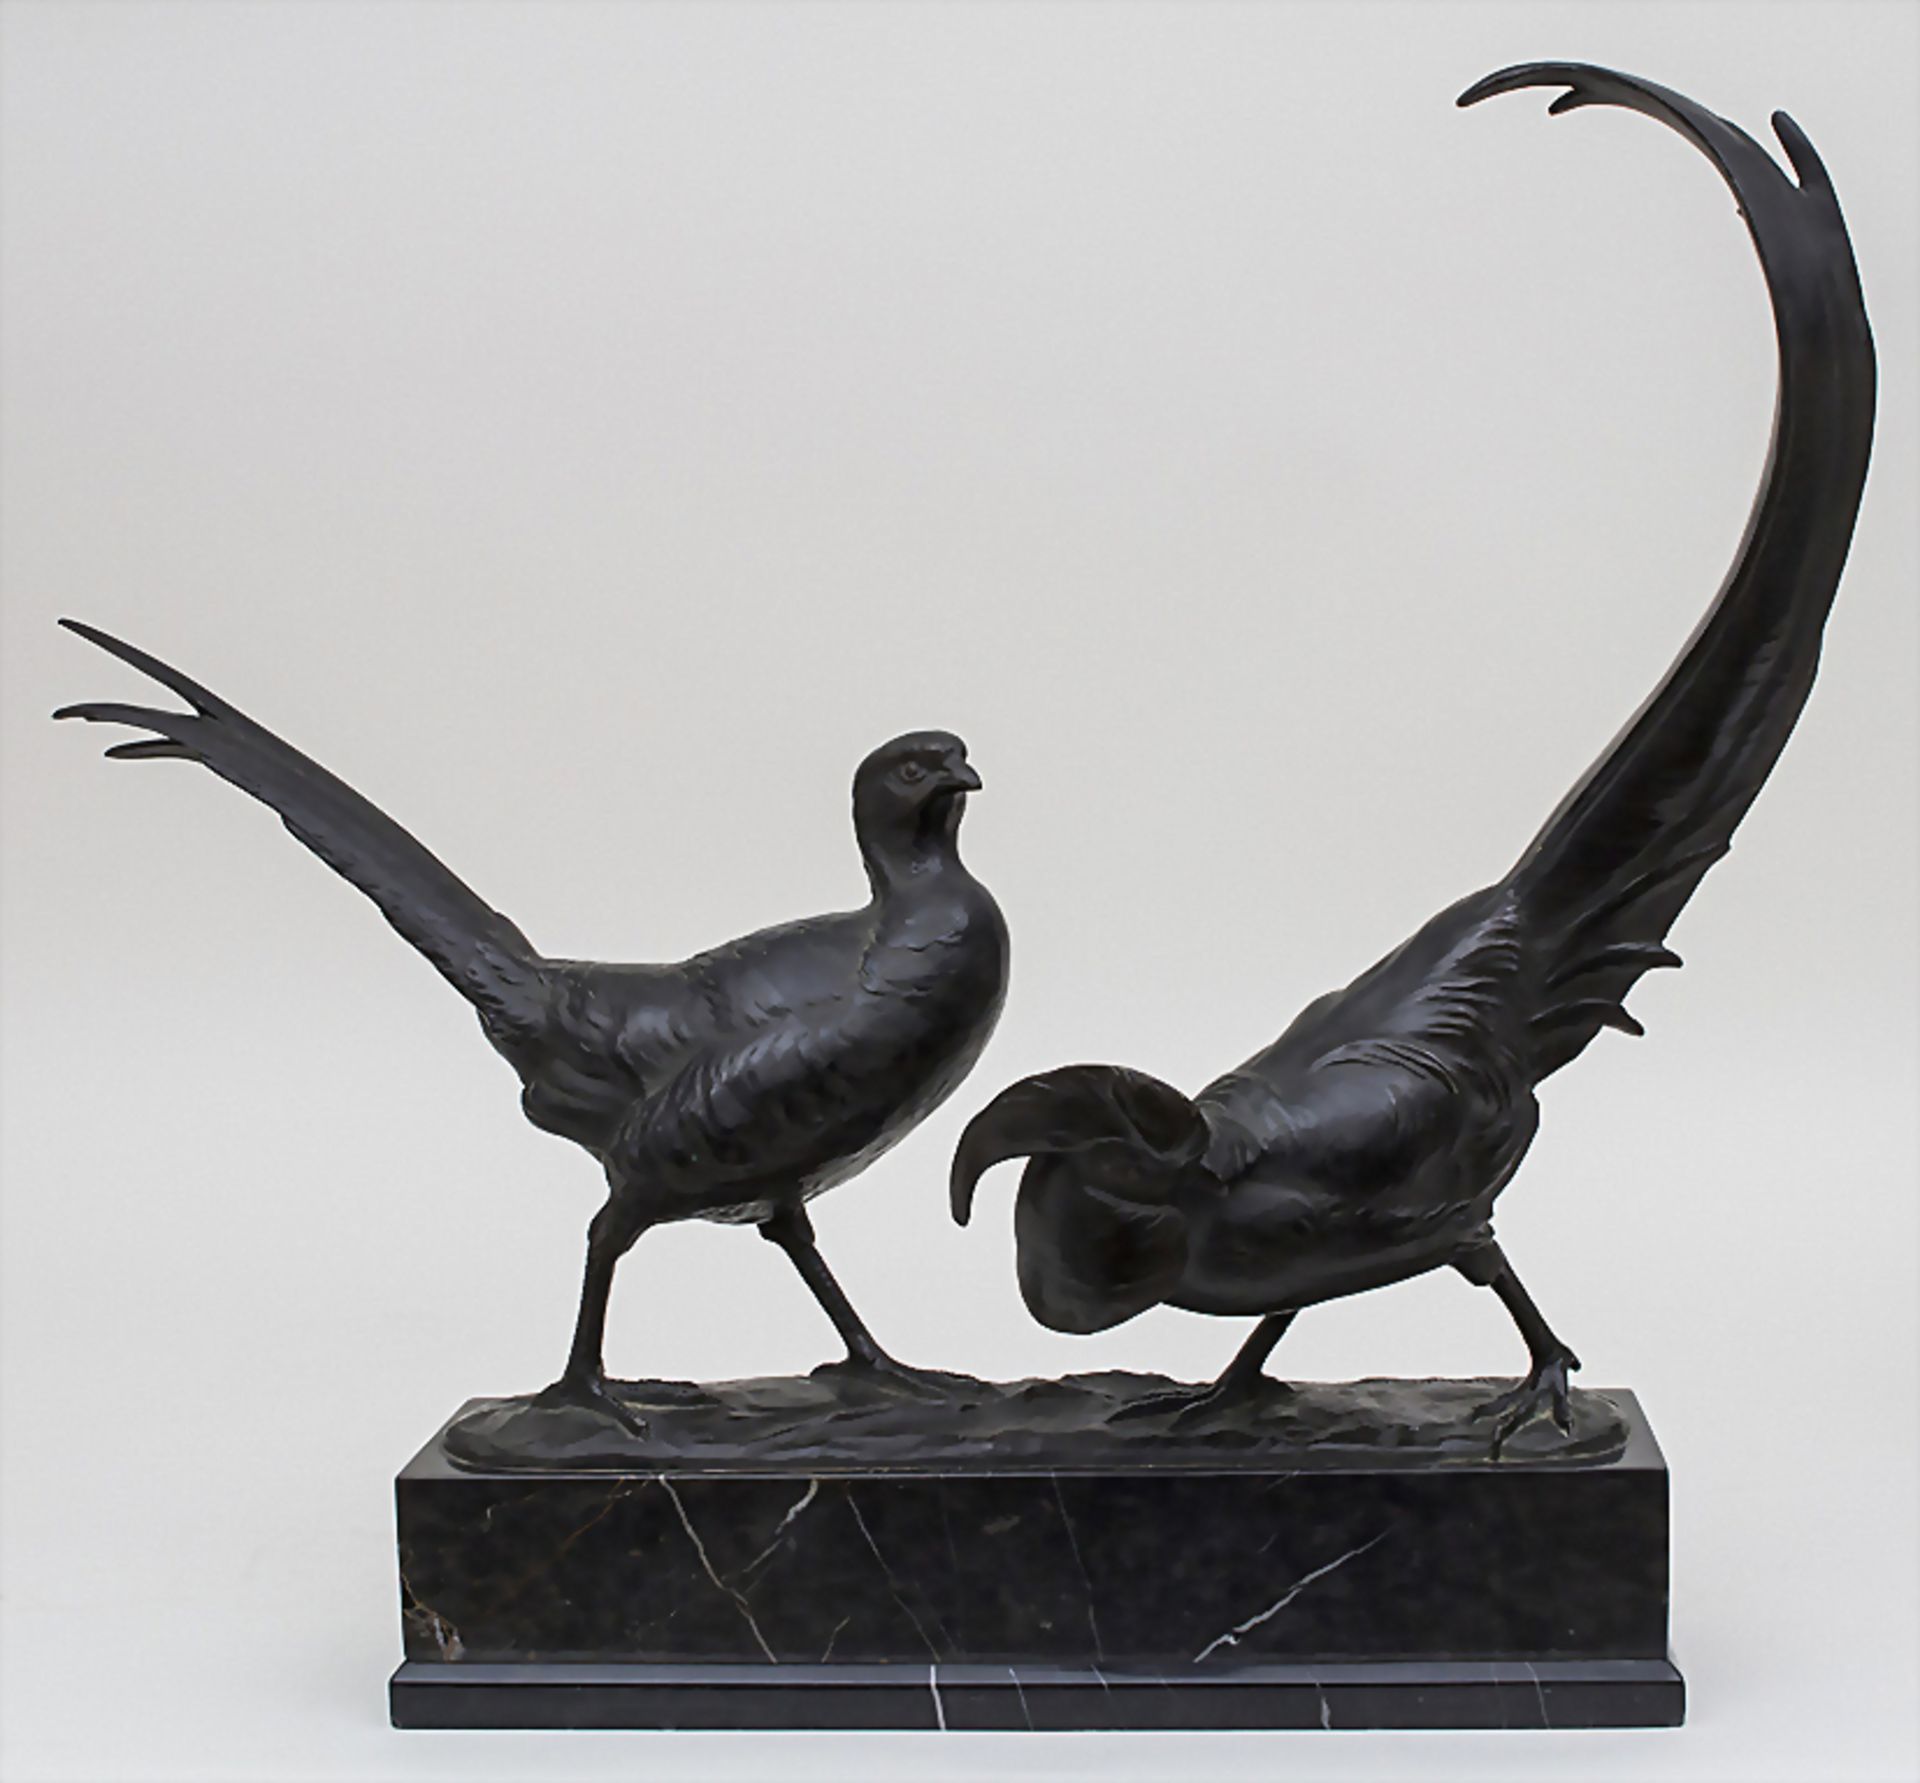 Paar Goldfasanen / A pair of golden pheasant, Anton Büschelberger, 1869-1934Material: